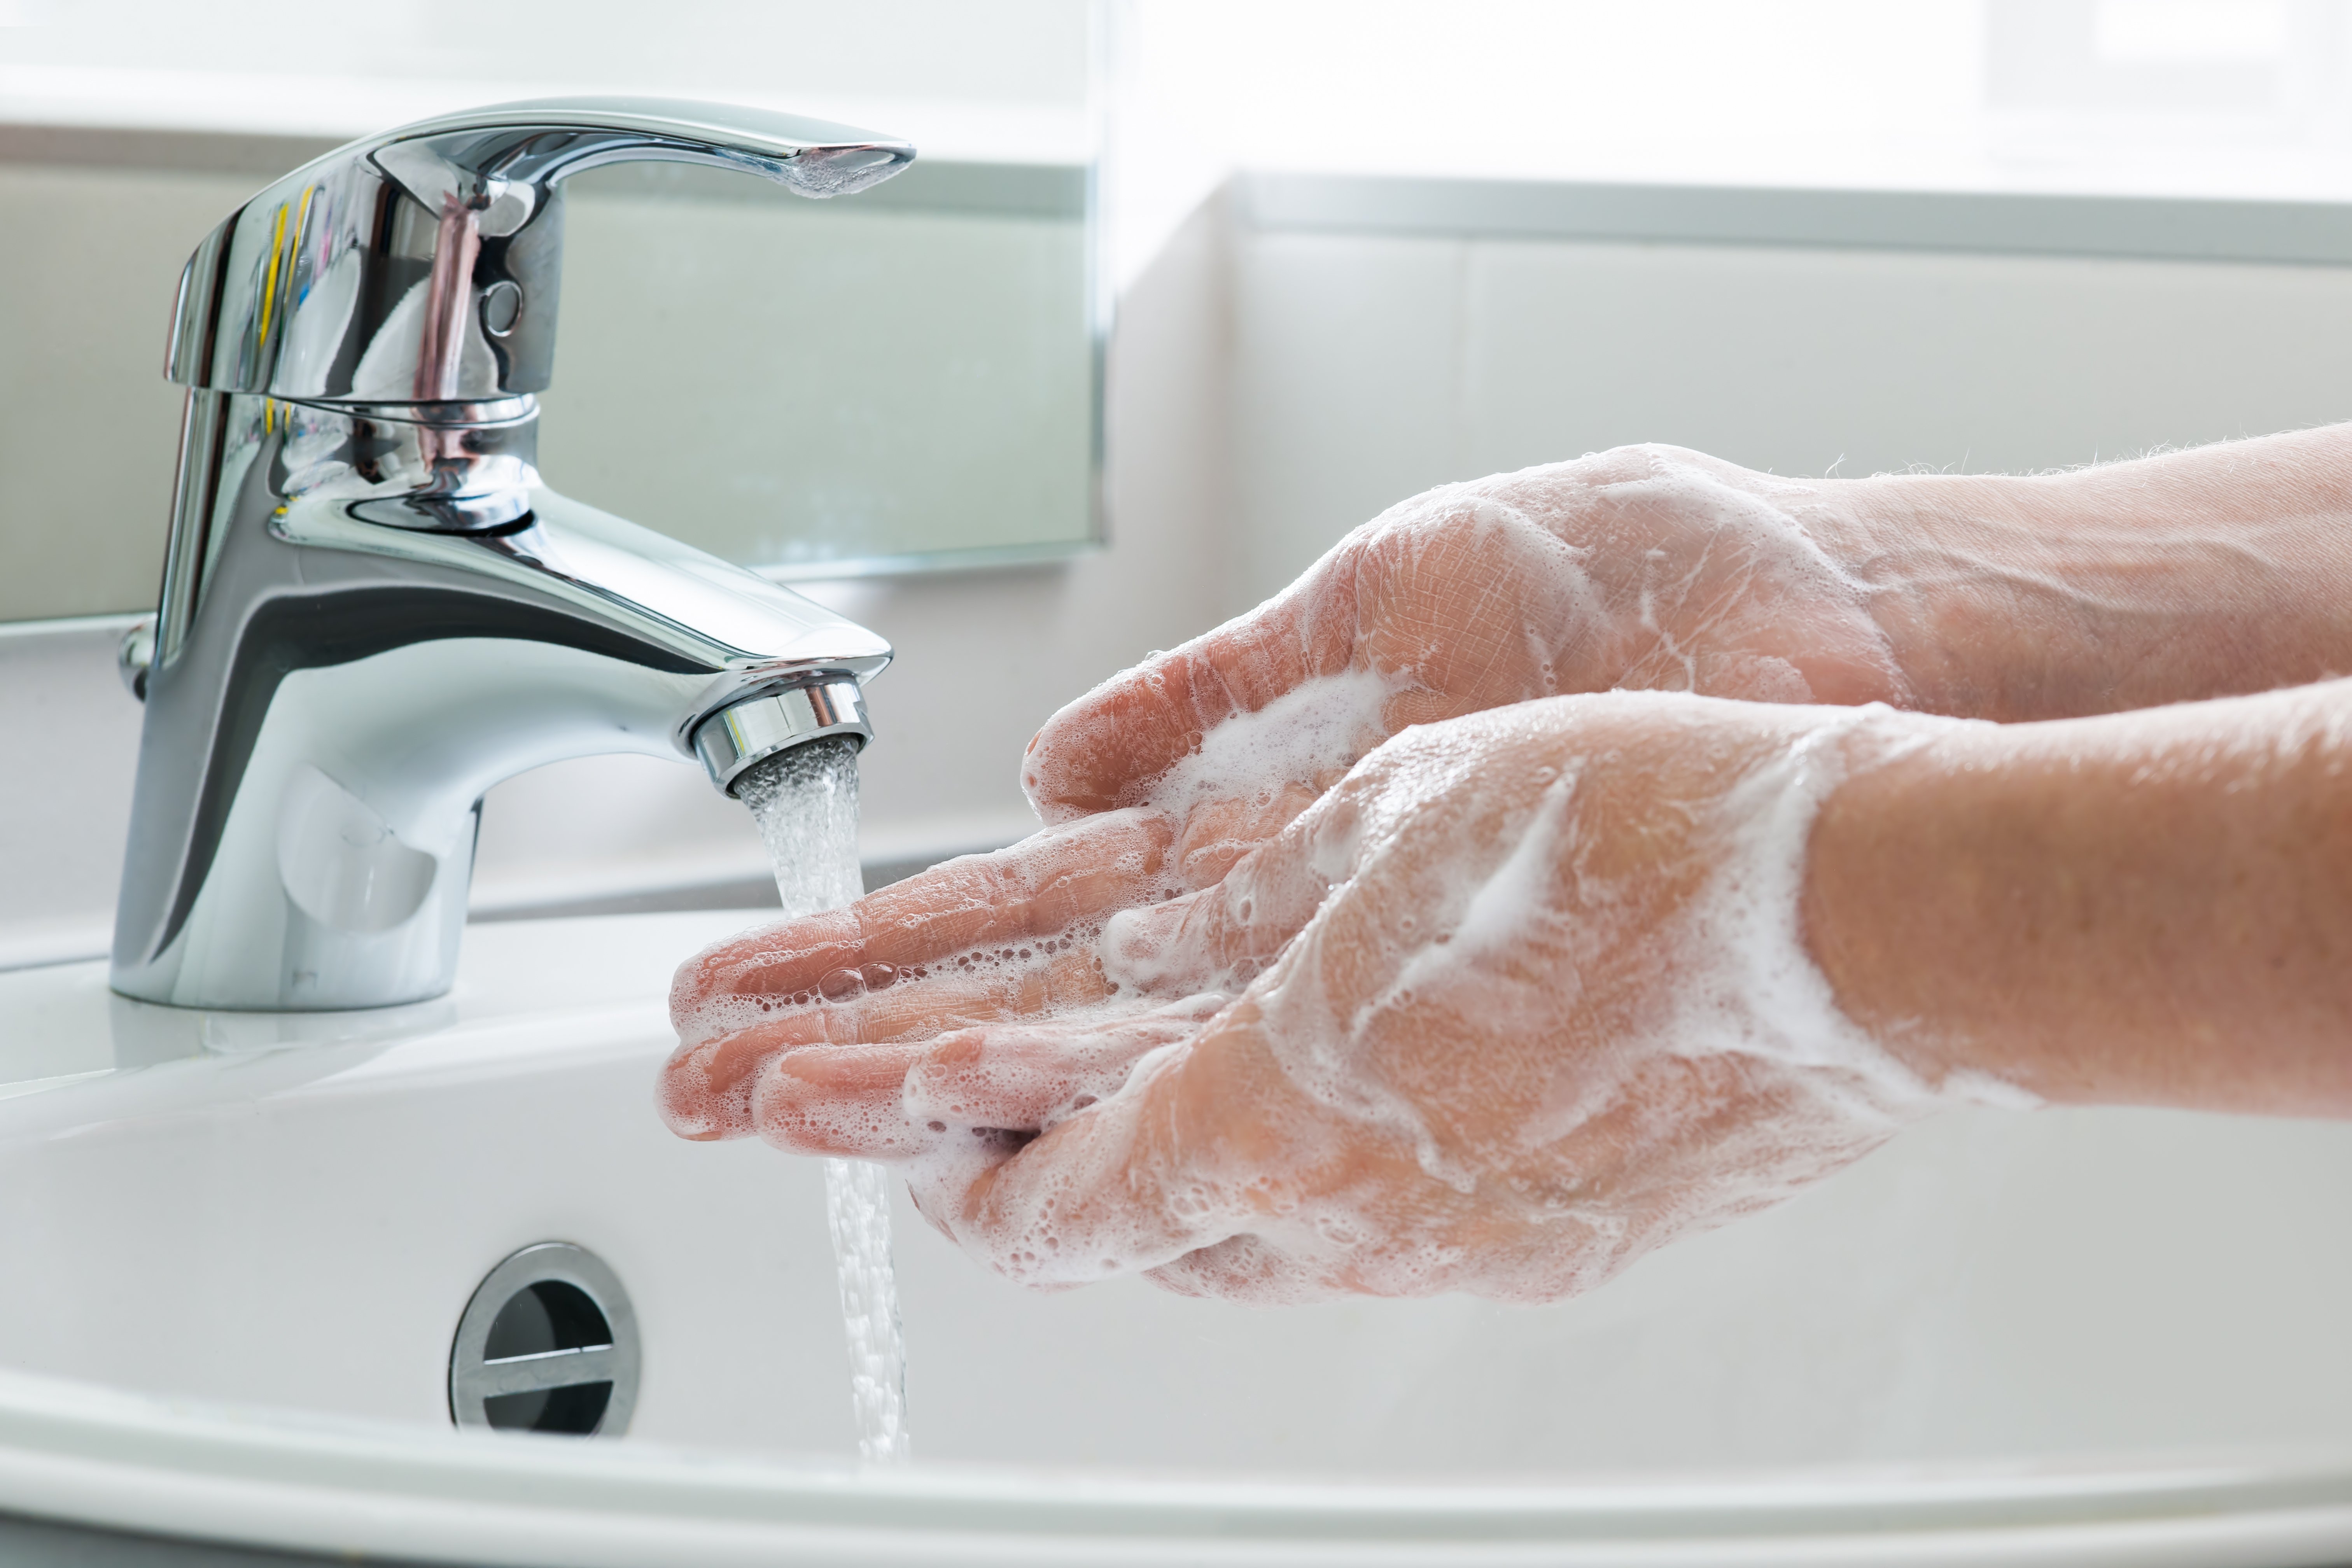 Una persona lavándose las manos. Fuente: Shutterstock